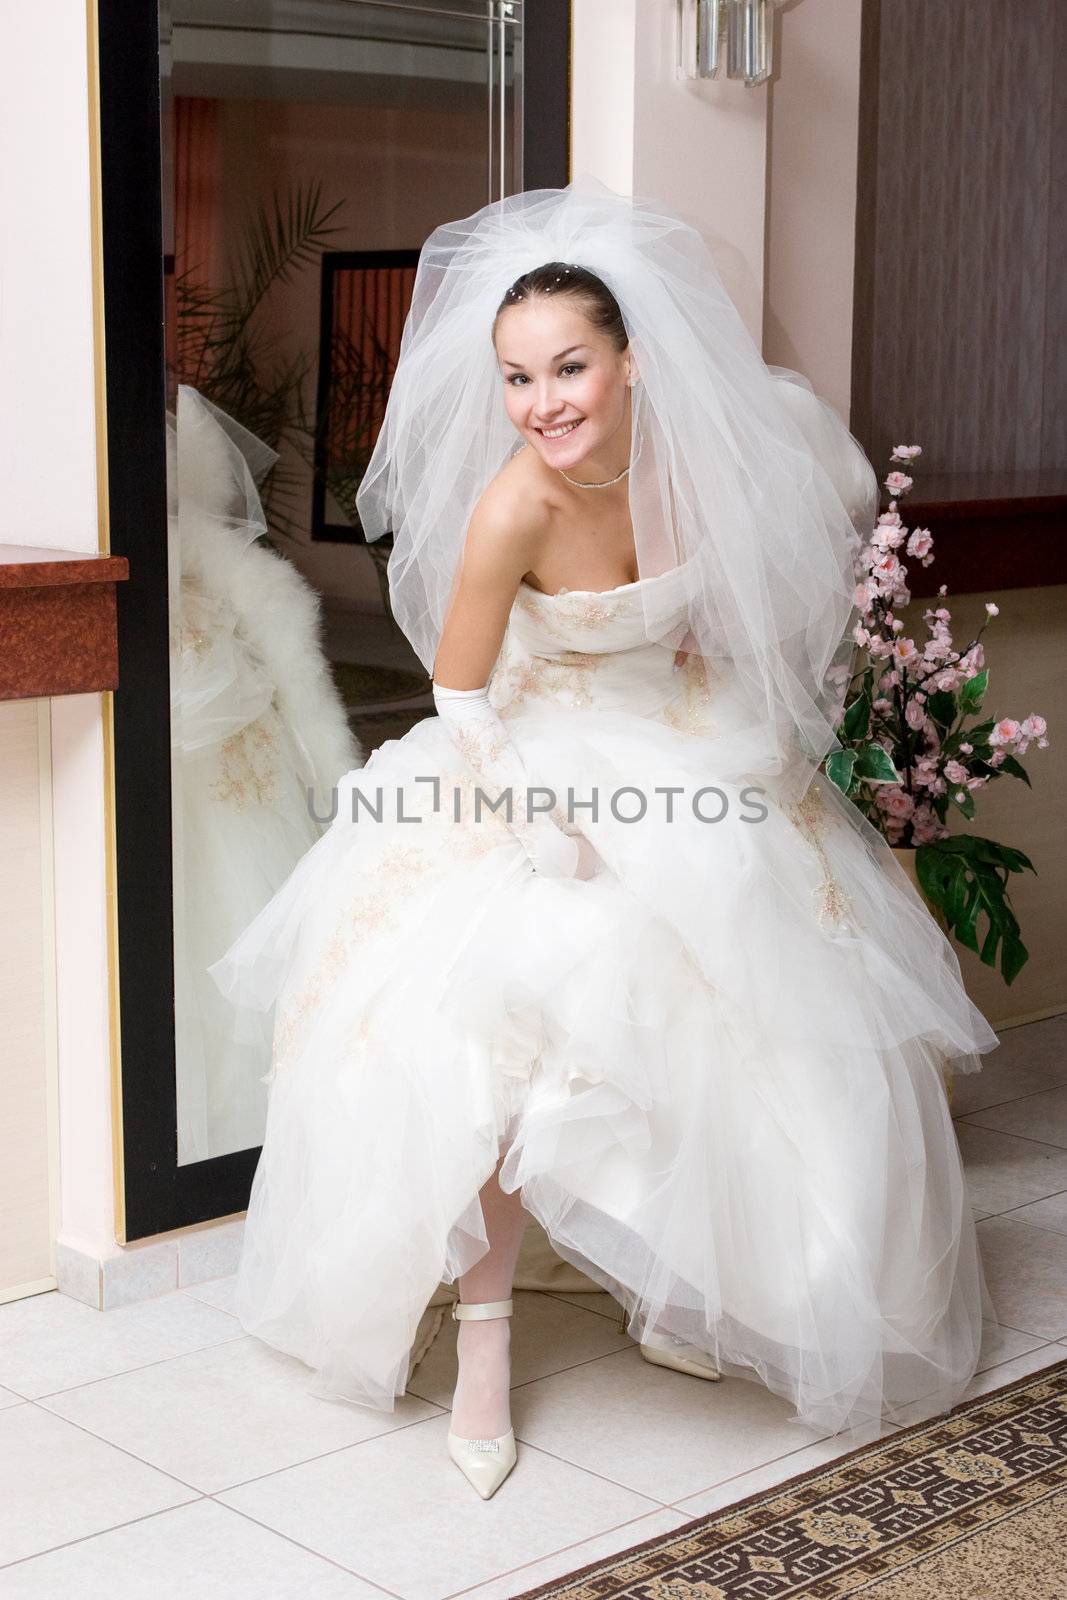 happy bride shows a shoe near the big mirror